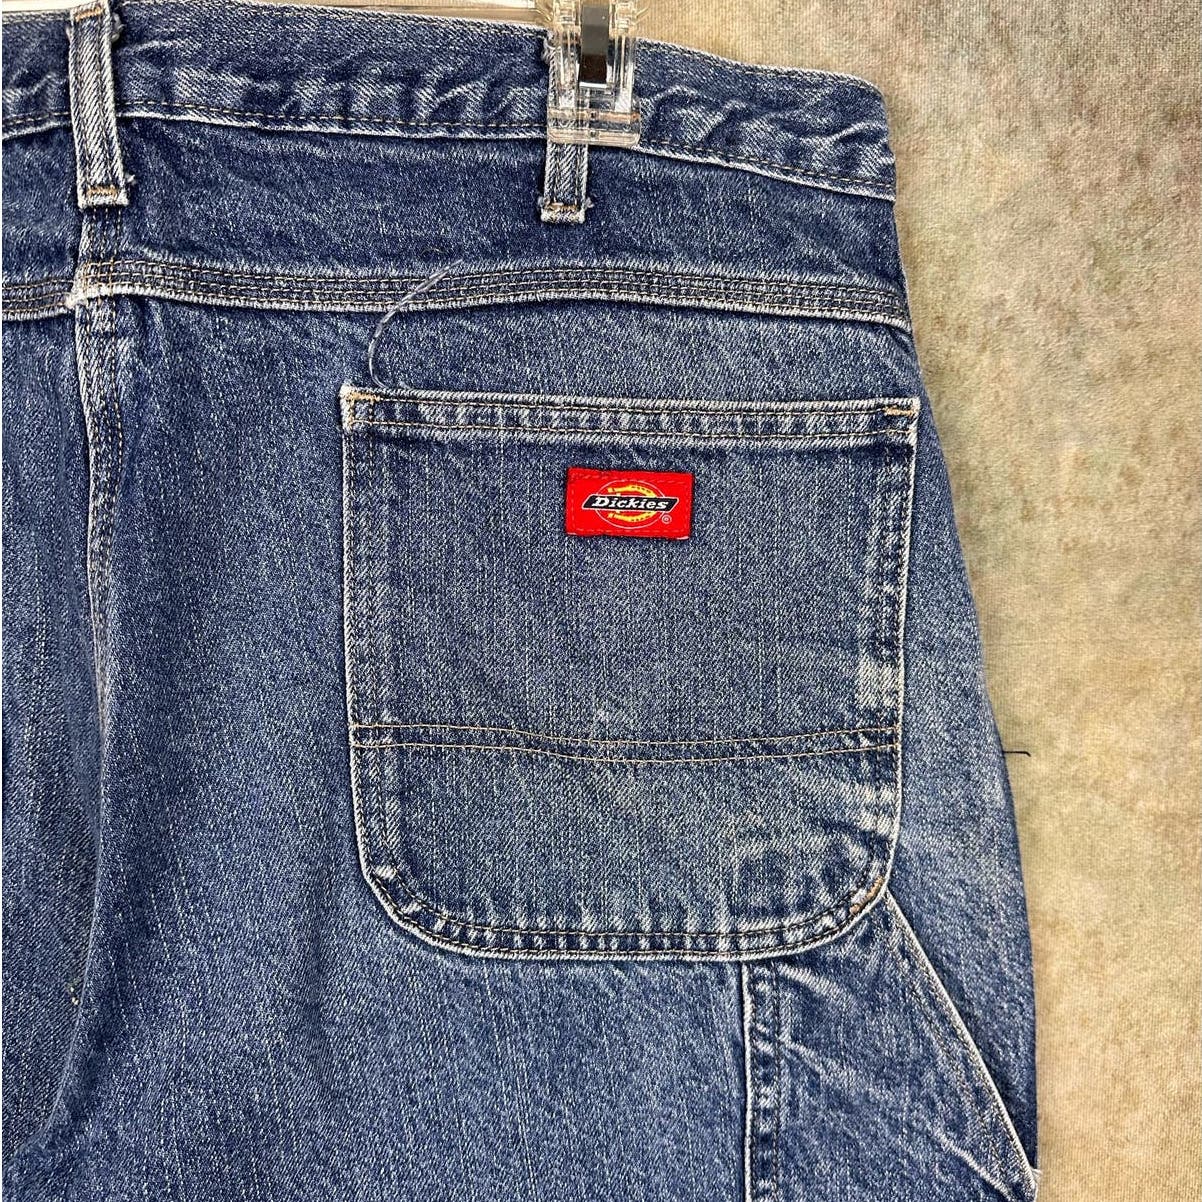 Vintage Dickies Carpenter Work Pants Jeans 38x30